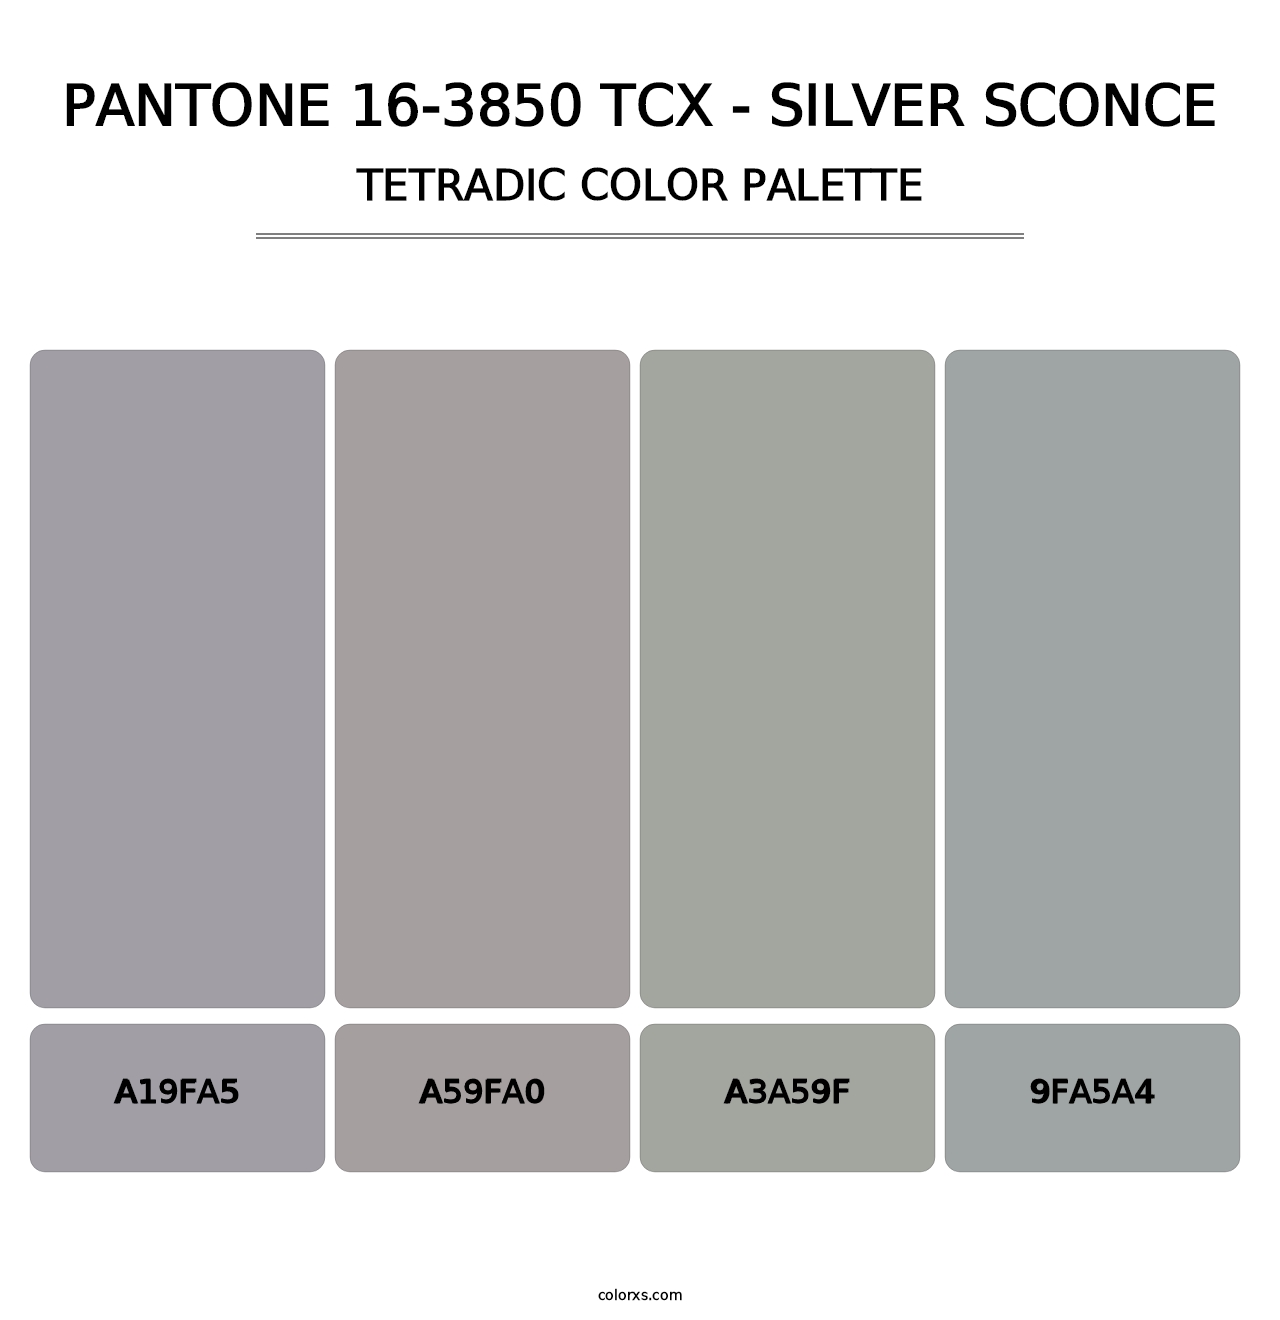 PANTONE 16-3850 TCX - Silver Sconce - Tetradic Color Palette